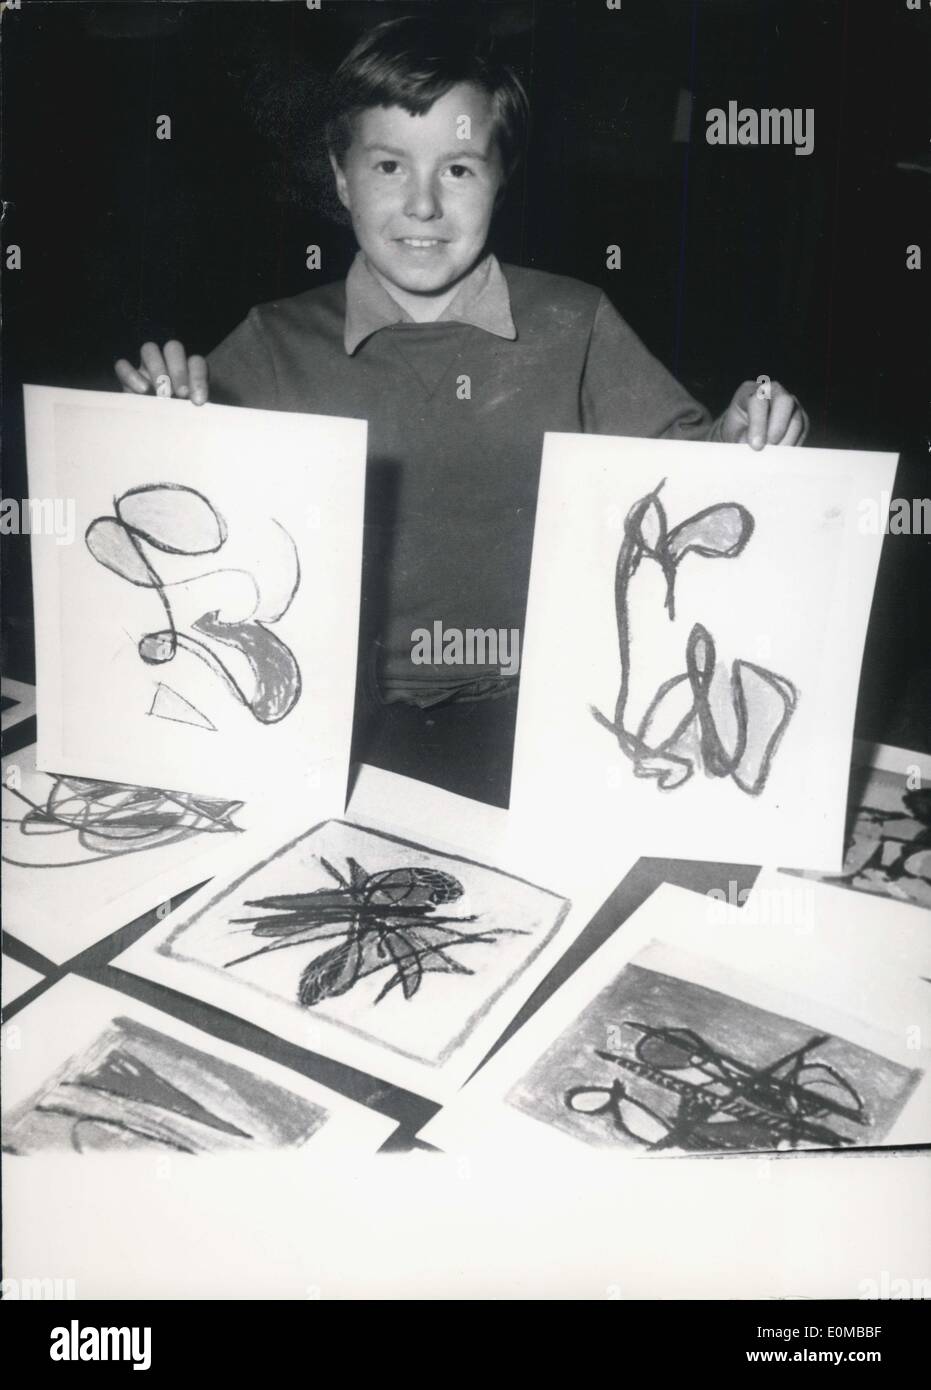 28 mai 1954 - artiste de 9 ans expose des peintures 'Abstract': Patrick Jordan de Paris, 9 ans, parmi ses peintures actuellement exposées à la galerie d'Orsay Paris. Patrick a commencé à peindre quand il avait 4 ans et avait montré un grand talent dans l'expression de ses idées dans un style purement abstrait. Banque D'Images